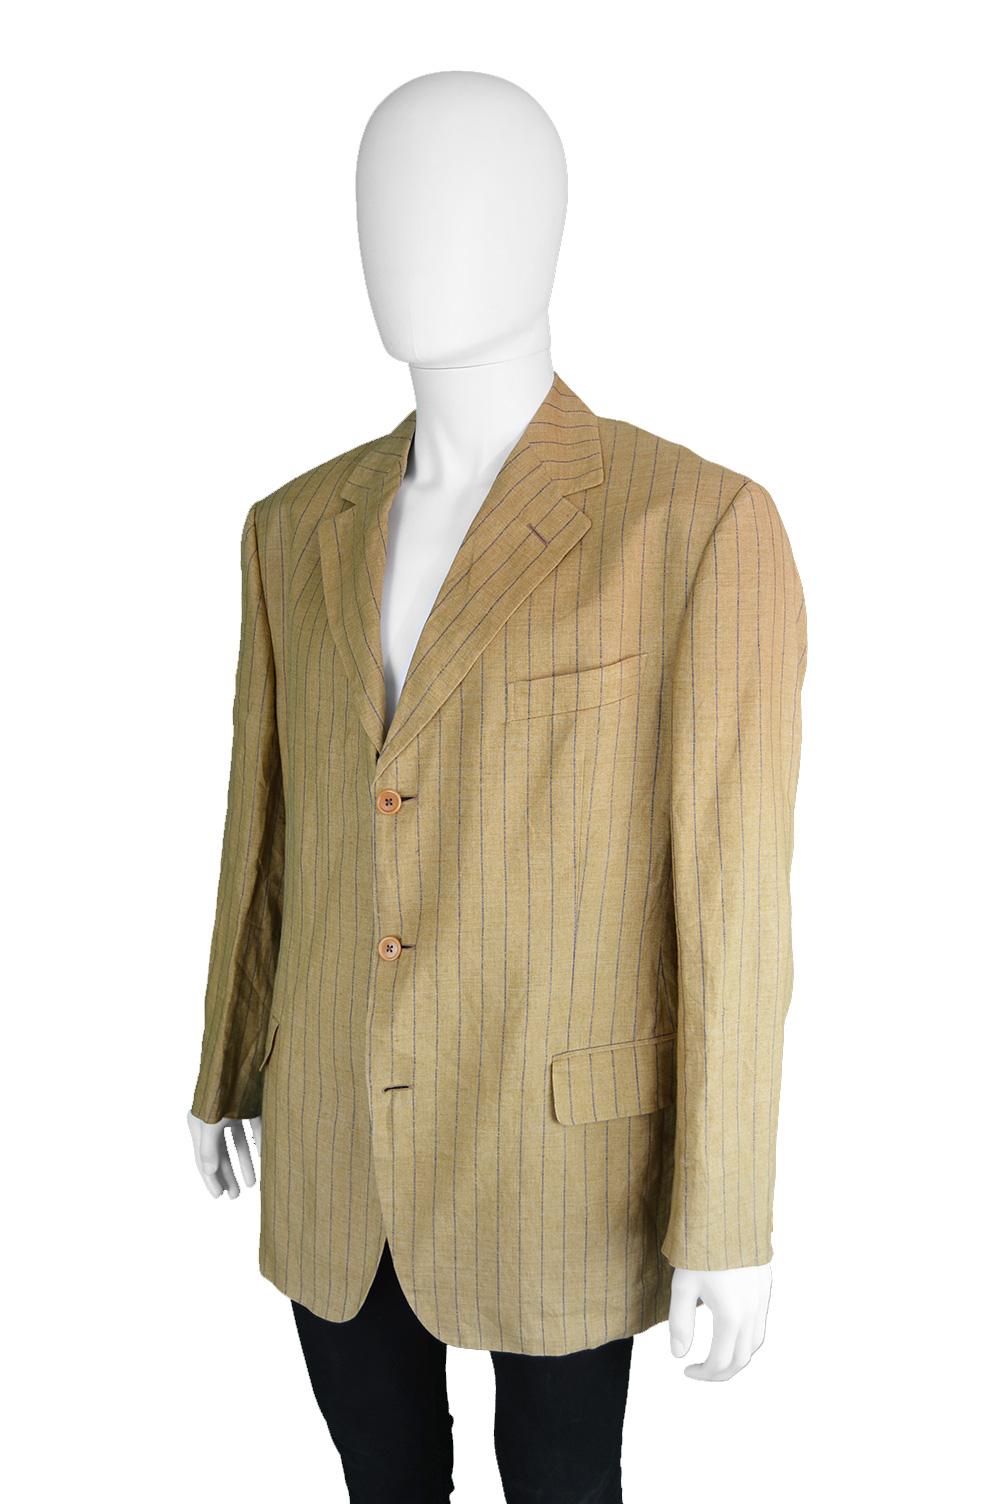 Romeo Gigli Men's Vintage Mustard Yellow Pinstripe Linen Blazer Jacket, 1990s (Gelb)